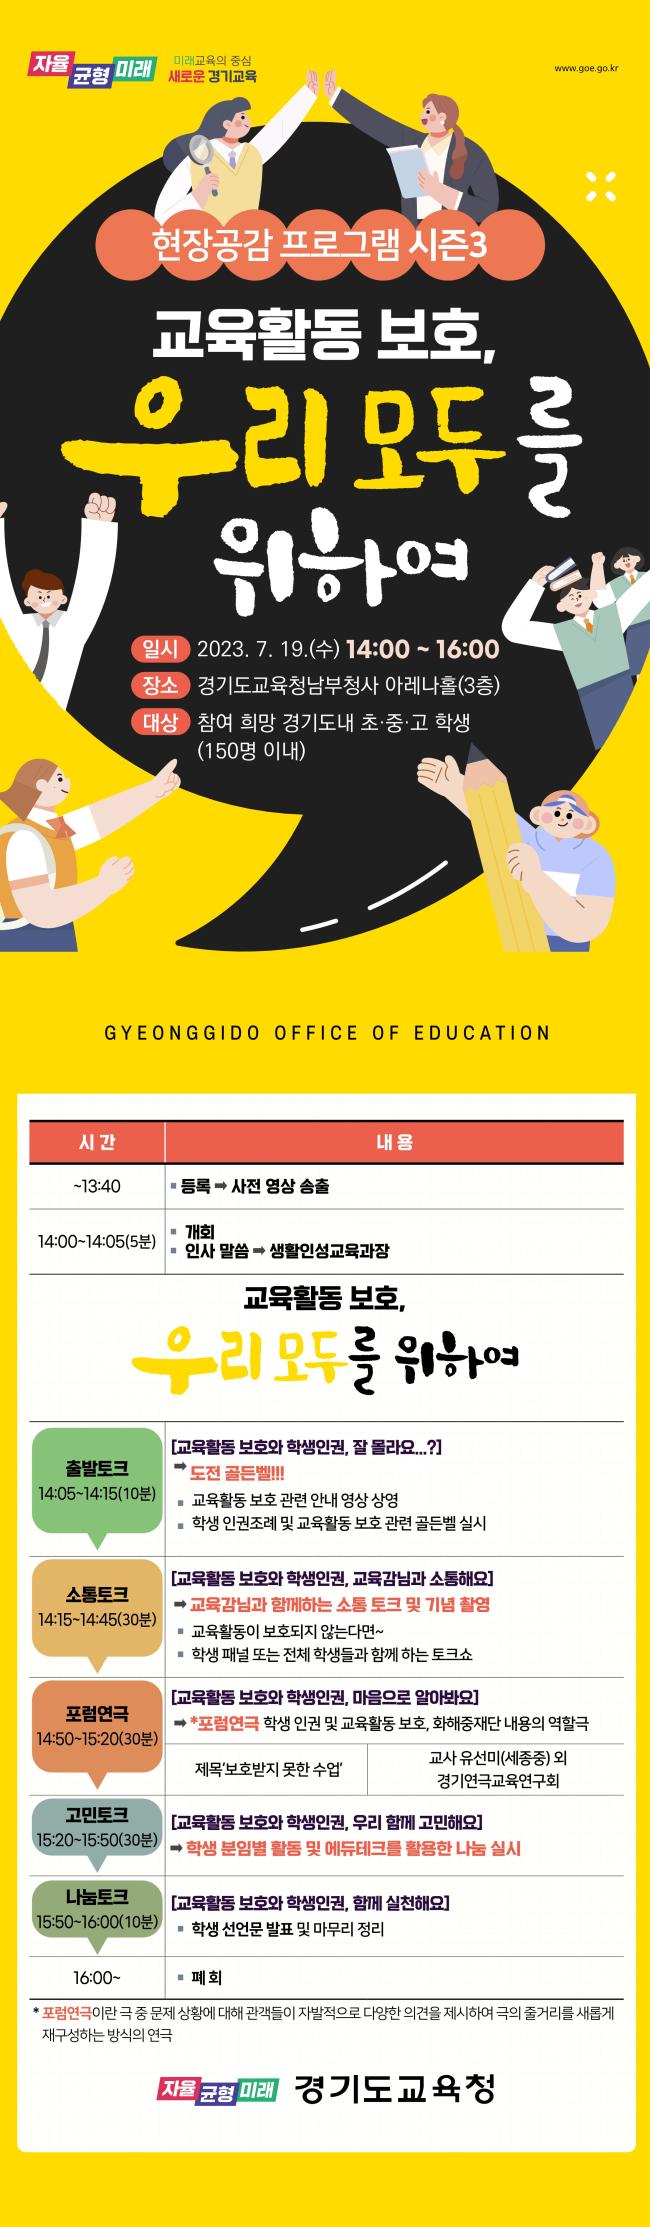 경기도교육청 생활인성교육과_붙임 4. 홍보 포스터_1.jpg